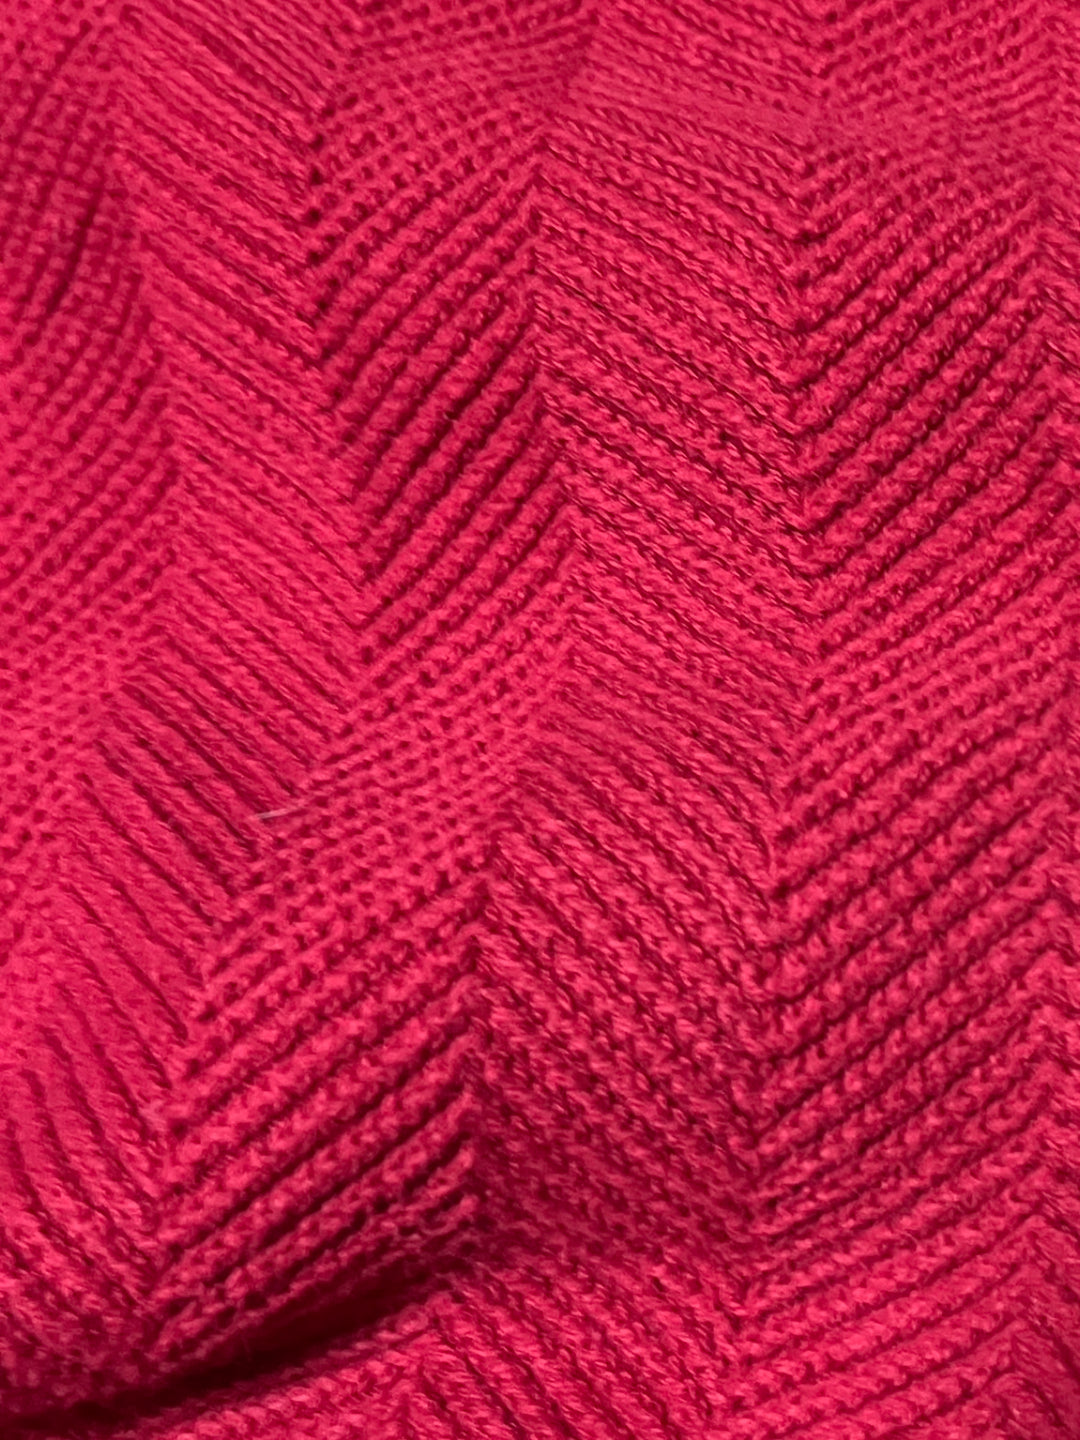 "CHAPS RALPH LAUREN" herringbone design knit